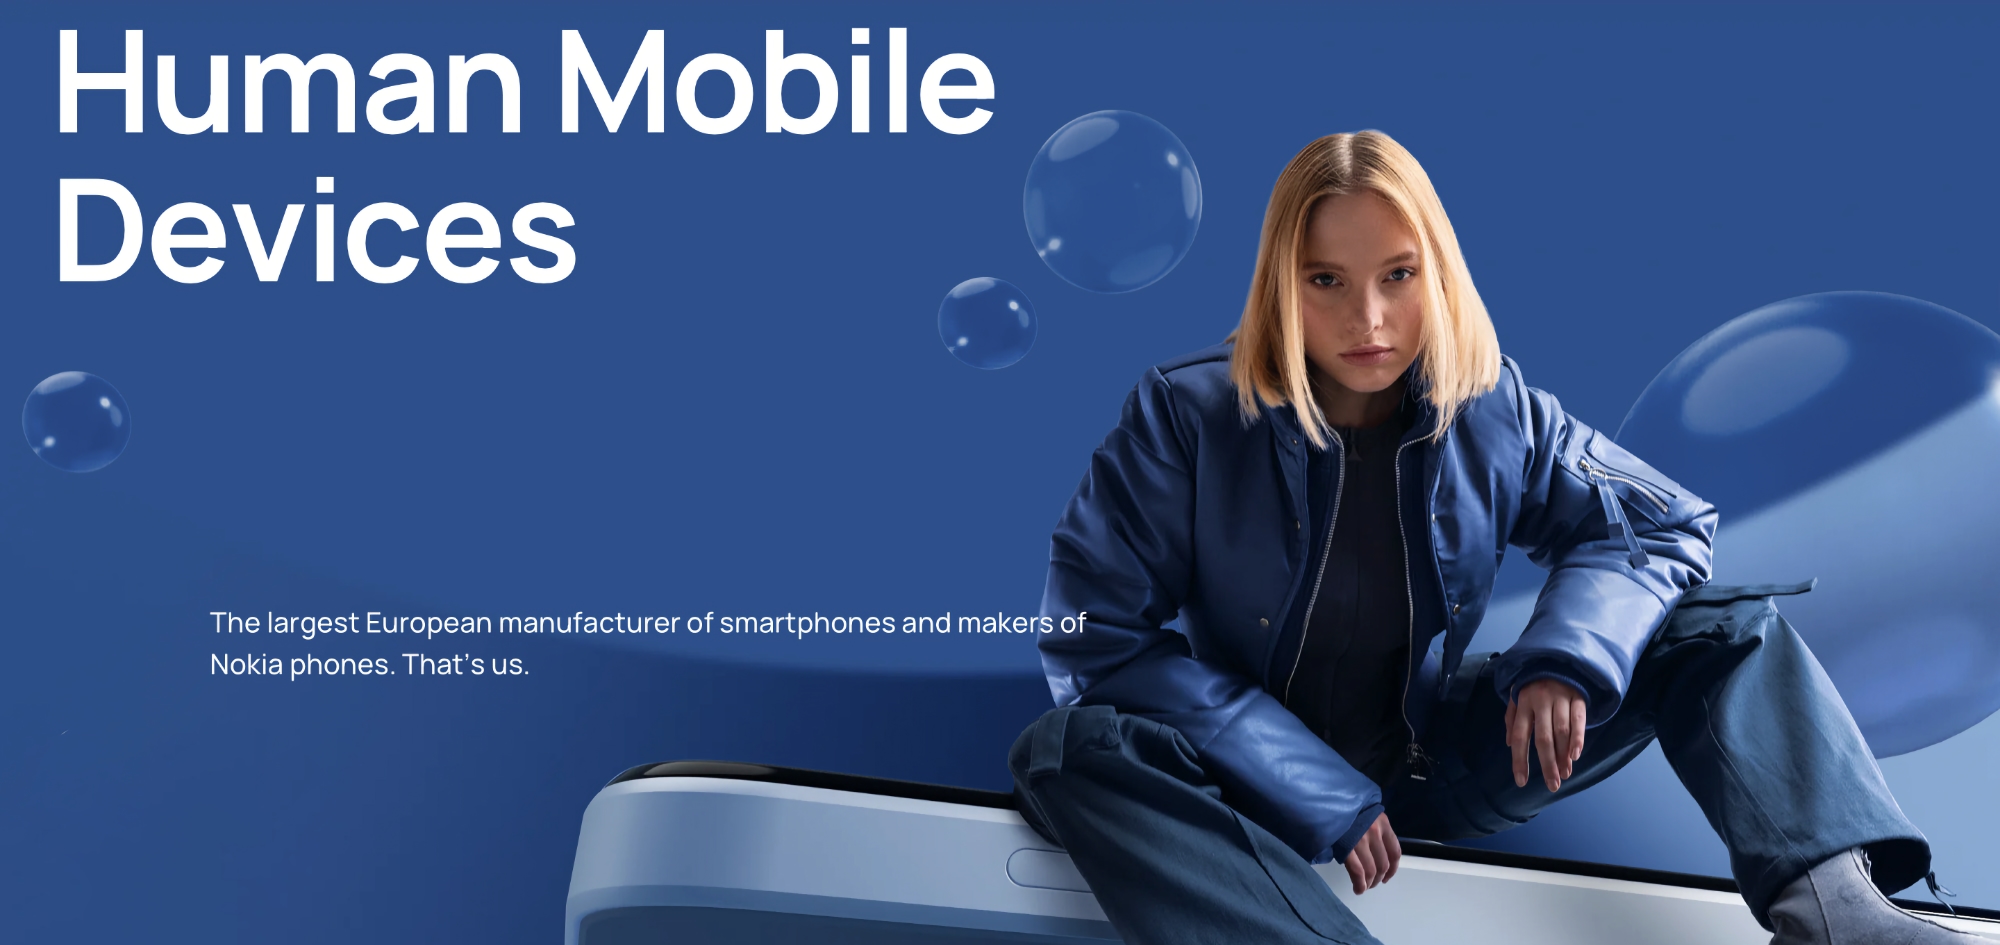 Strategia multimarca: HMD Global lancerà smartphone Nokia insieme a dispositivi di marca